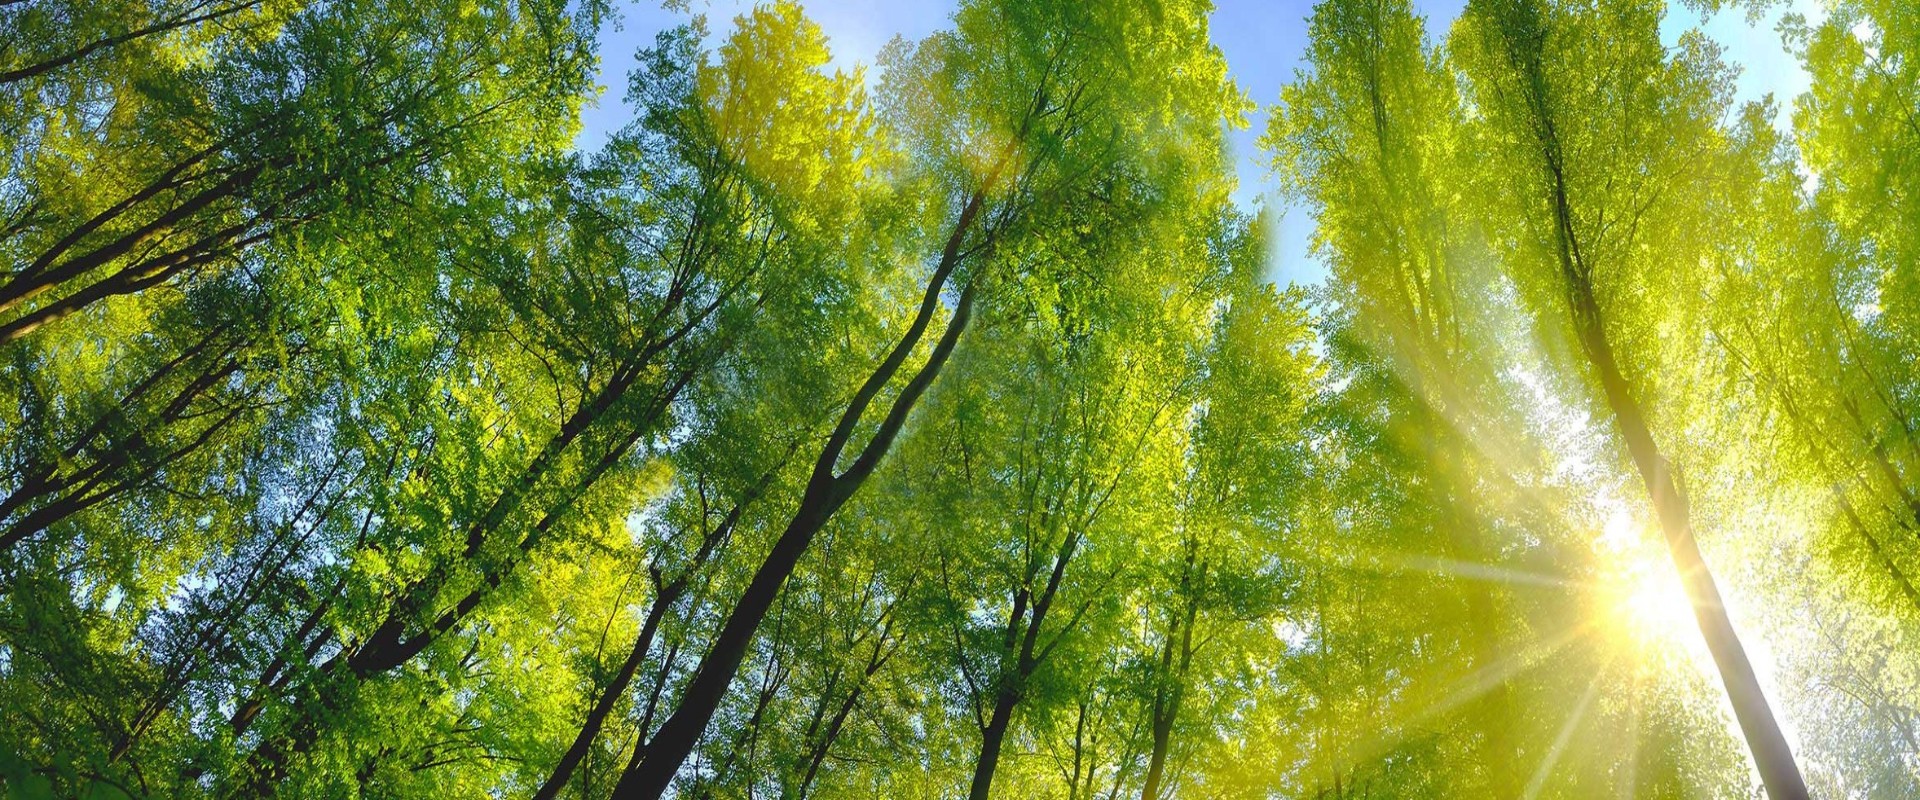  Bosque caducifolio con hojas verdes a la luz del sol y cielo azul por encima